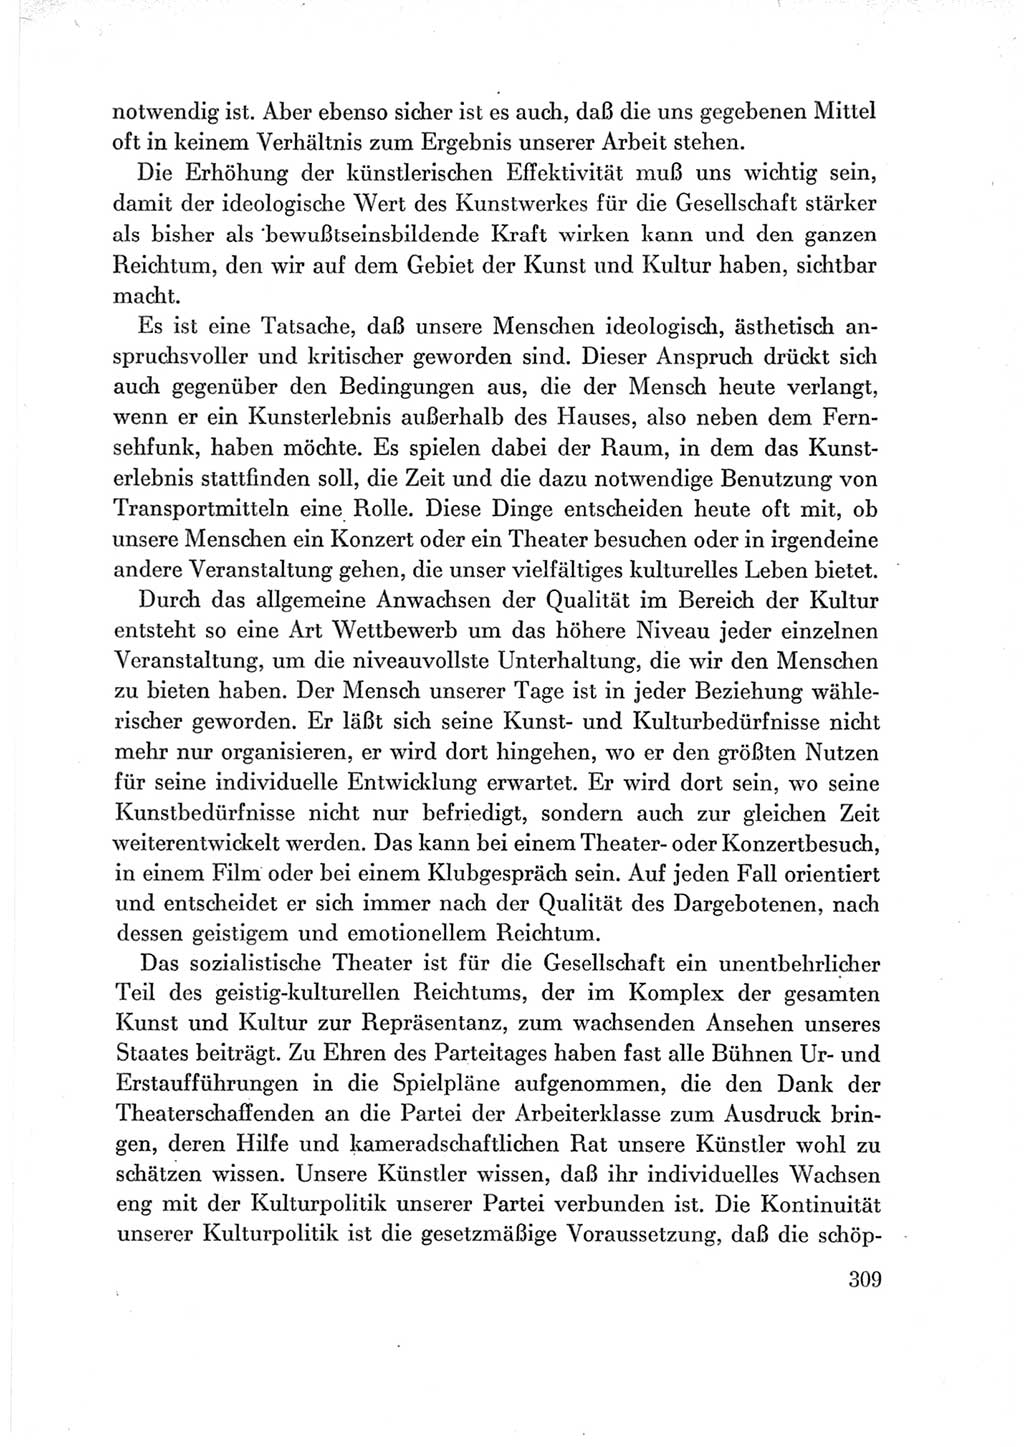 Protokoll der Verhandlungen des Ⅶ. Parteitages der Sozialistischen Einheitspartei Deutschlands (SED) [Deutsche Demokratische Republik (DDR)] 1967, Band Ⅲ, Seite 309 (Prot. Verh. Ⅶ. PT SED DDR 1967, Bd. Ⅲ, S. 309)